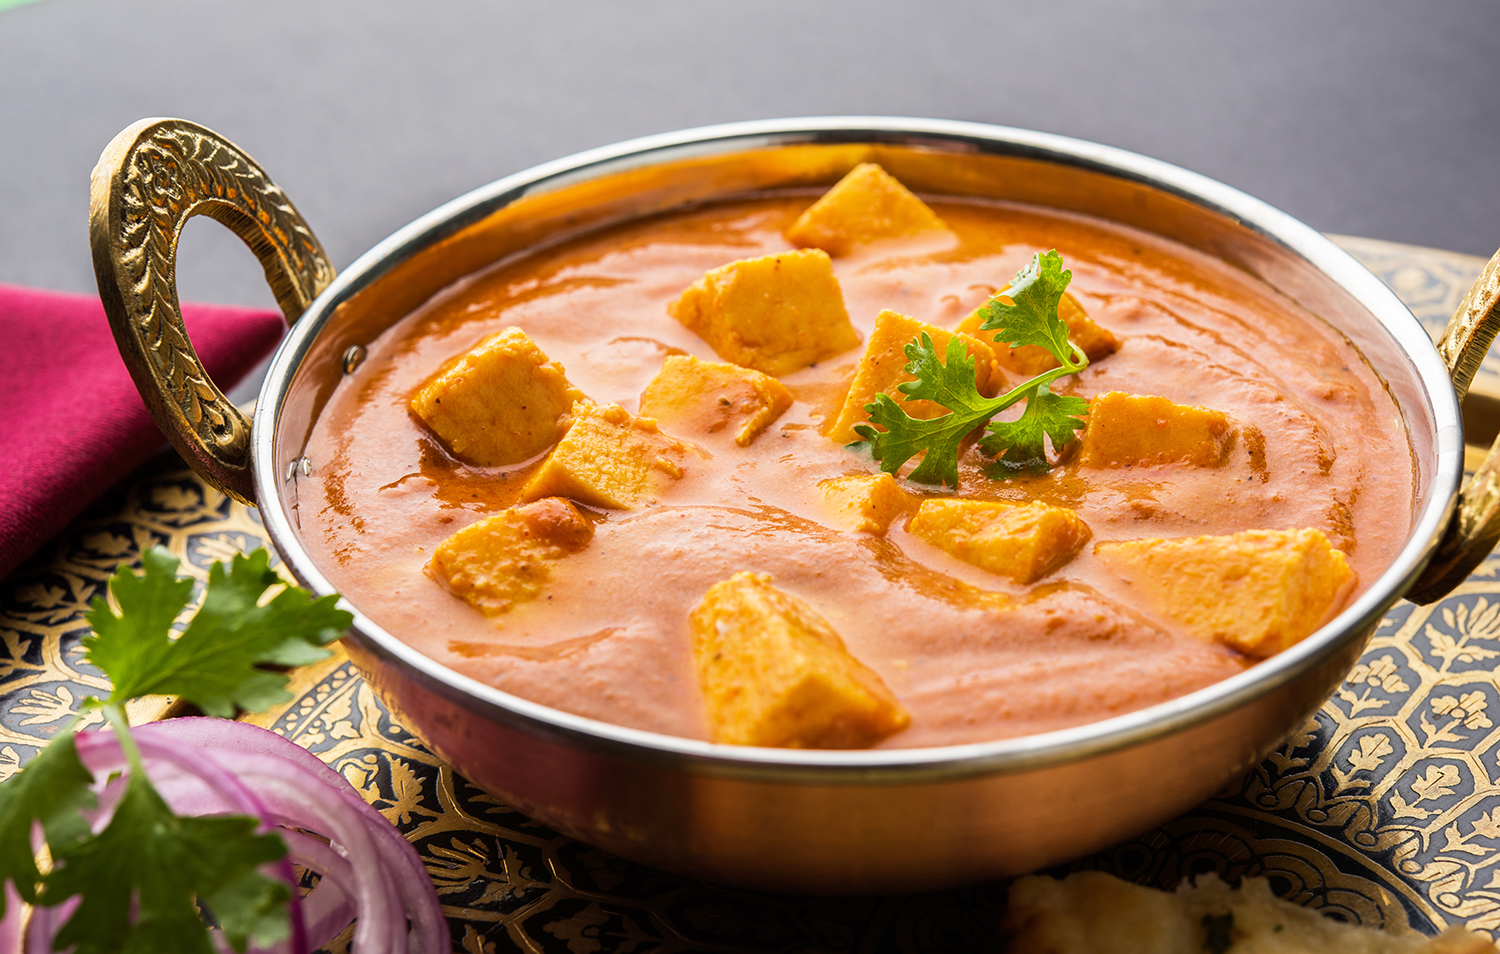 essay on punjabi food in hindi